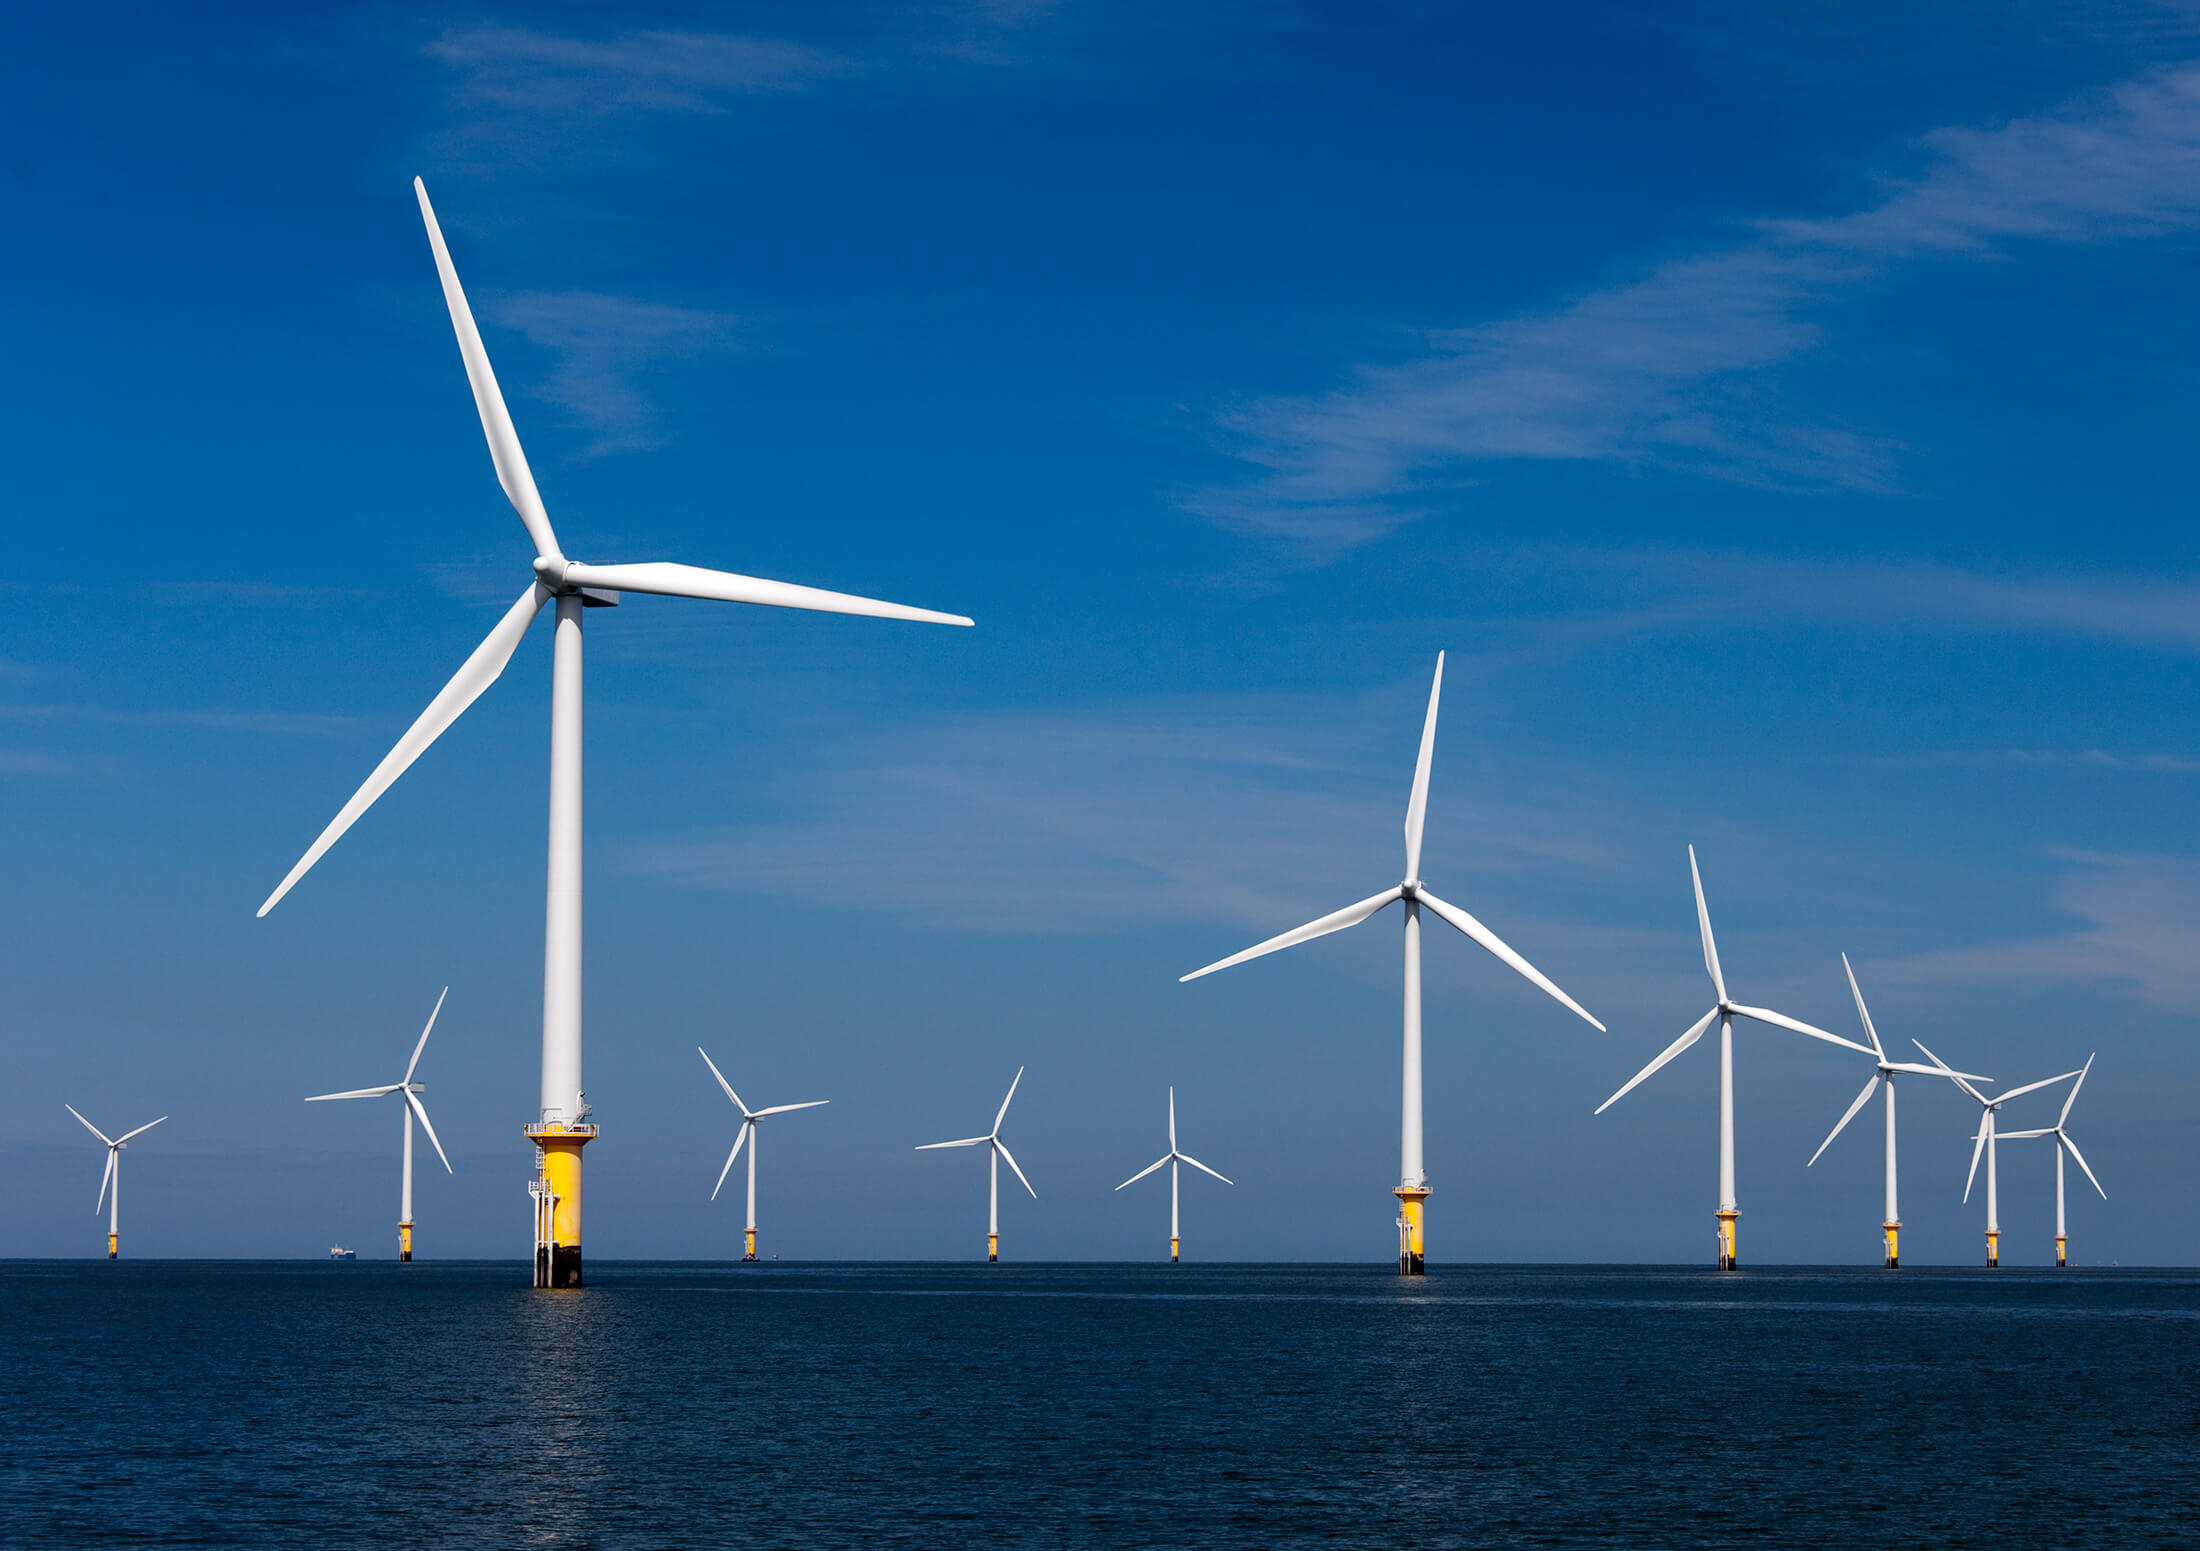 Siemens gamesa wind turbine power hidden